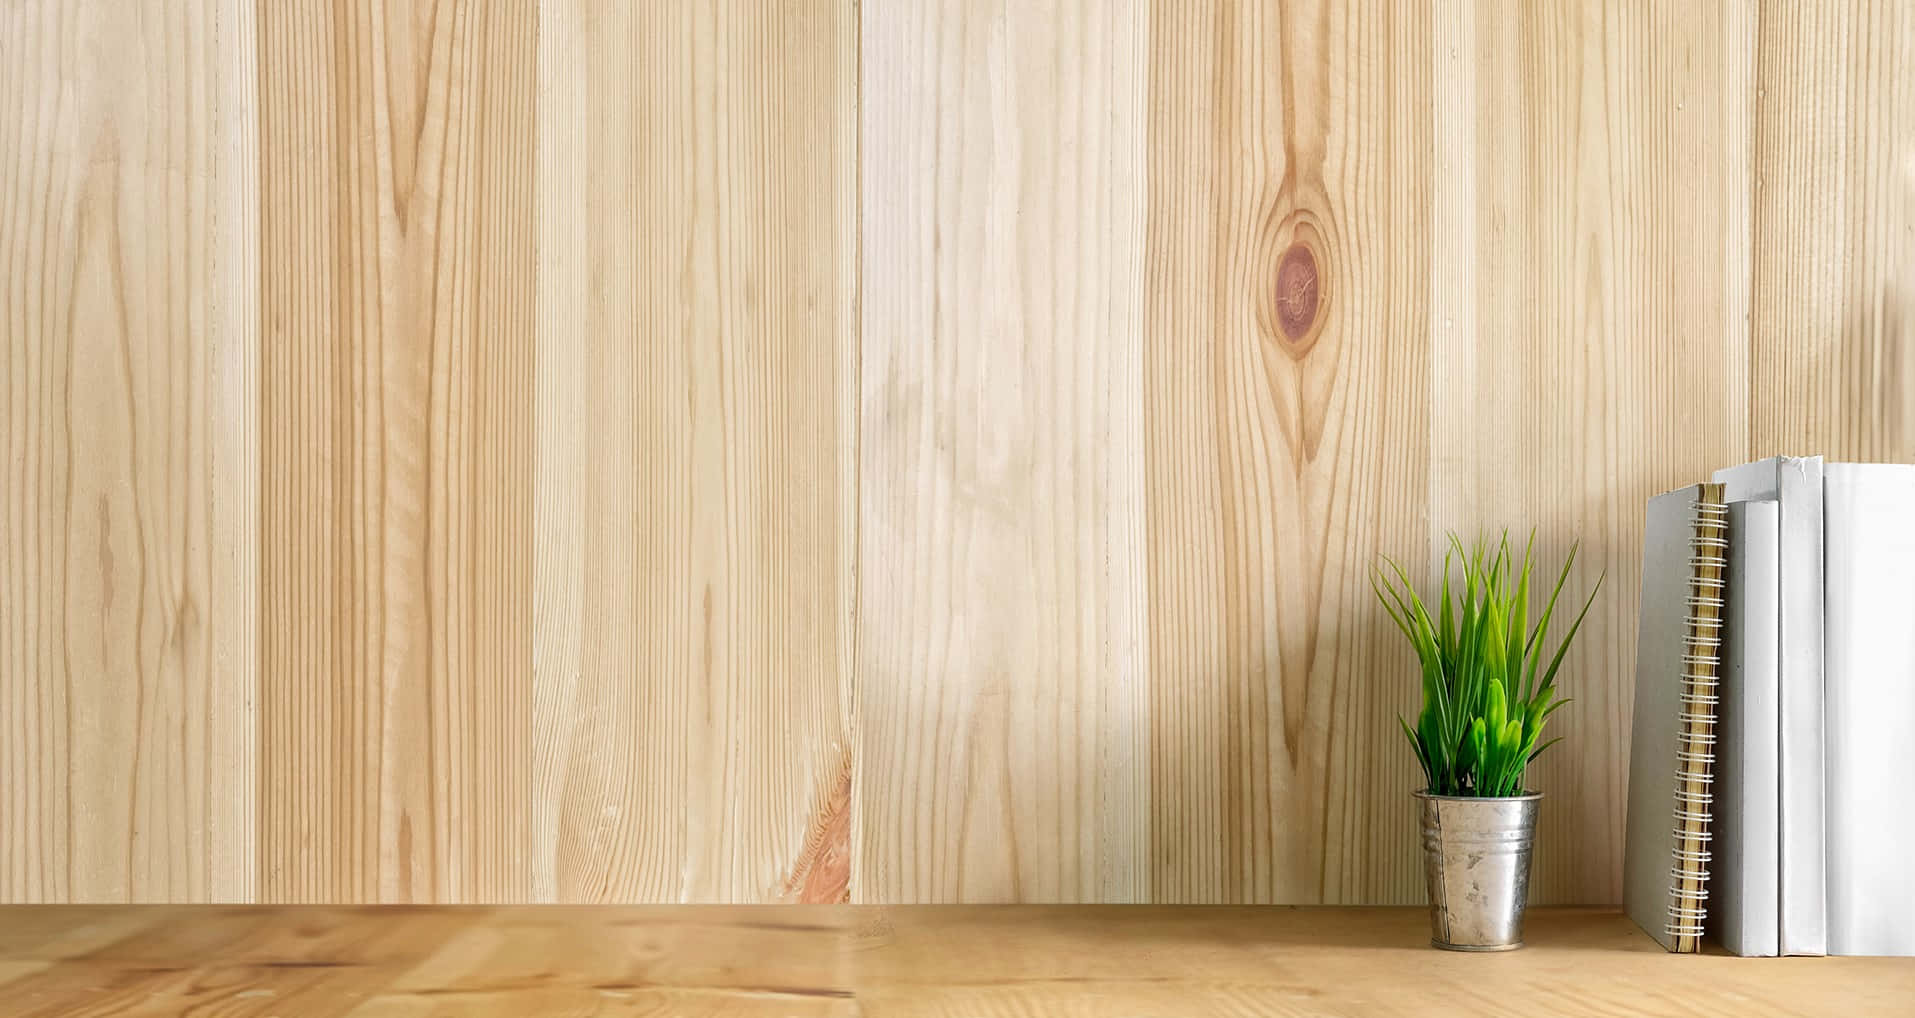 Finished Wood Shelf Virtual Background